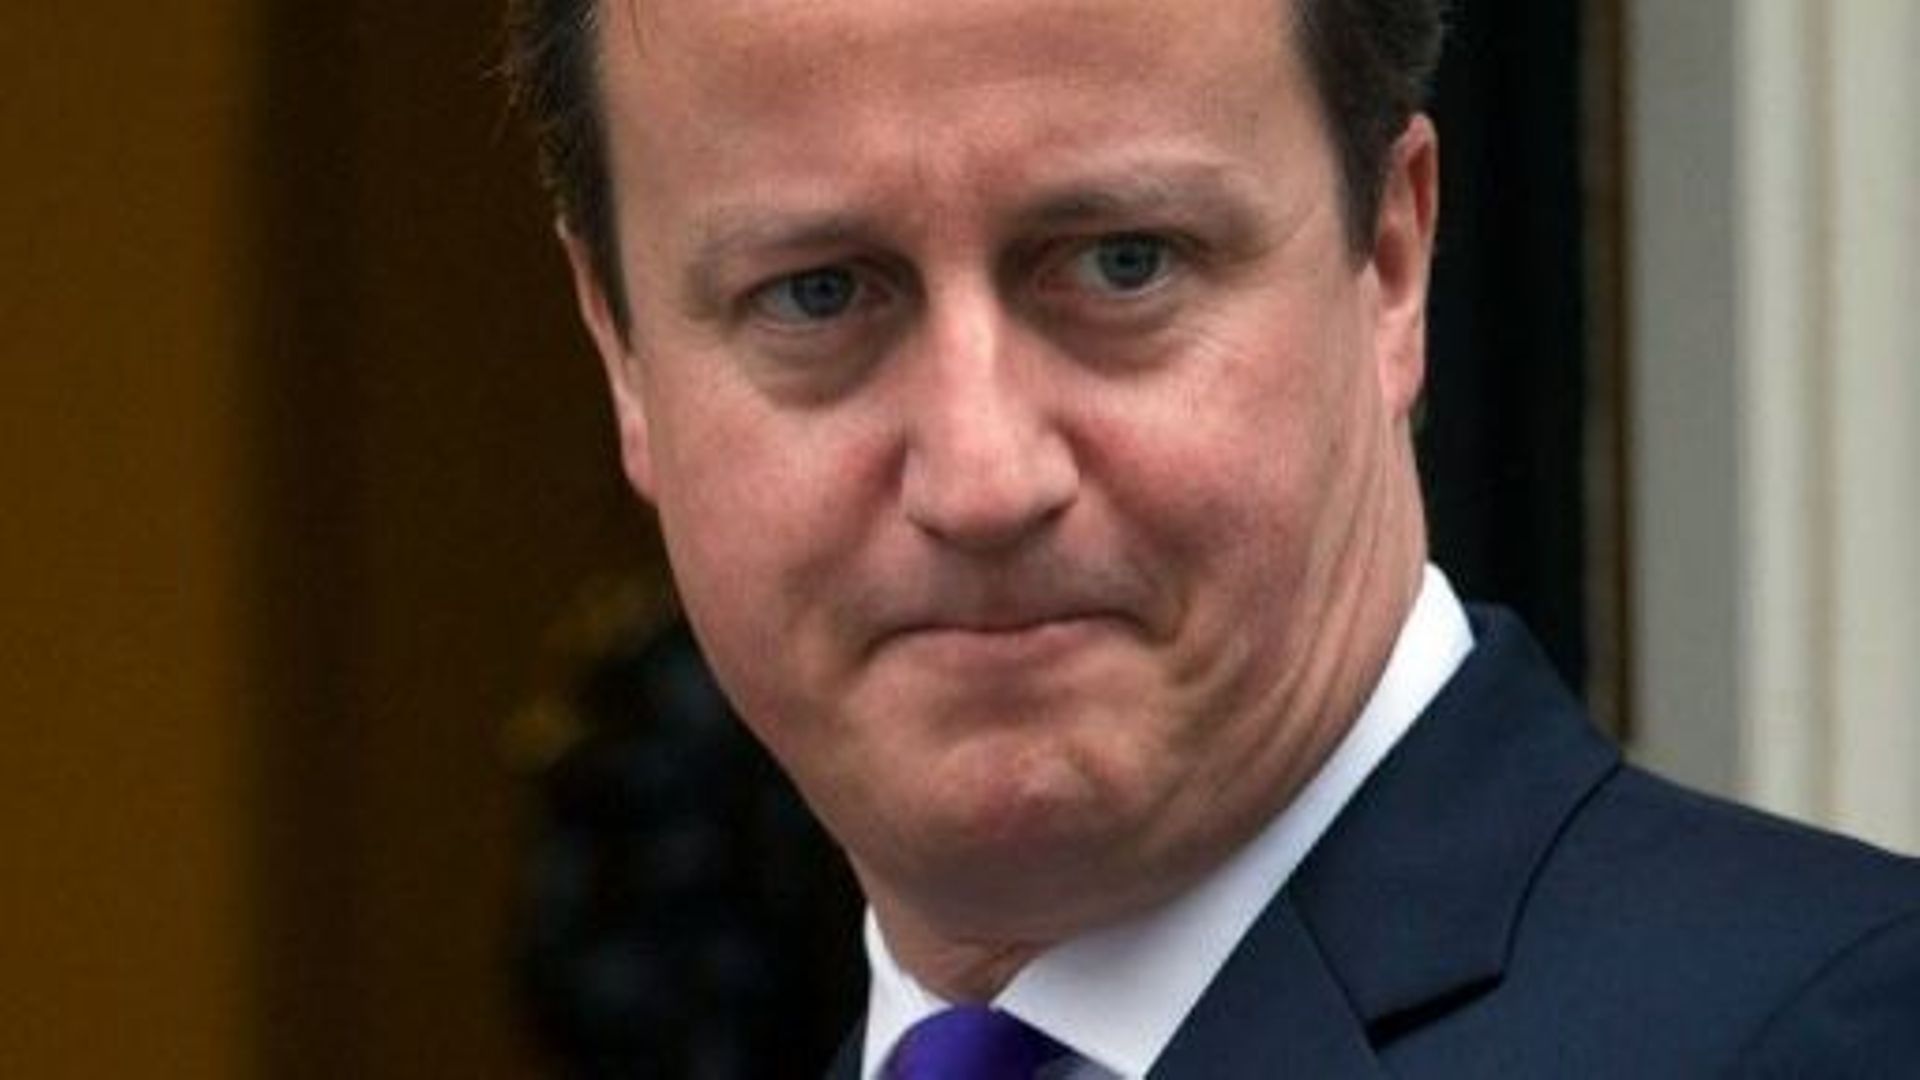 Le Premier ministre britannique David Cameron à Londres, le 25 octobre 2012